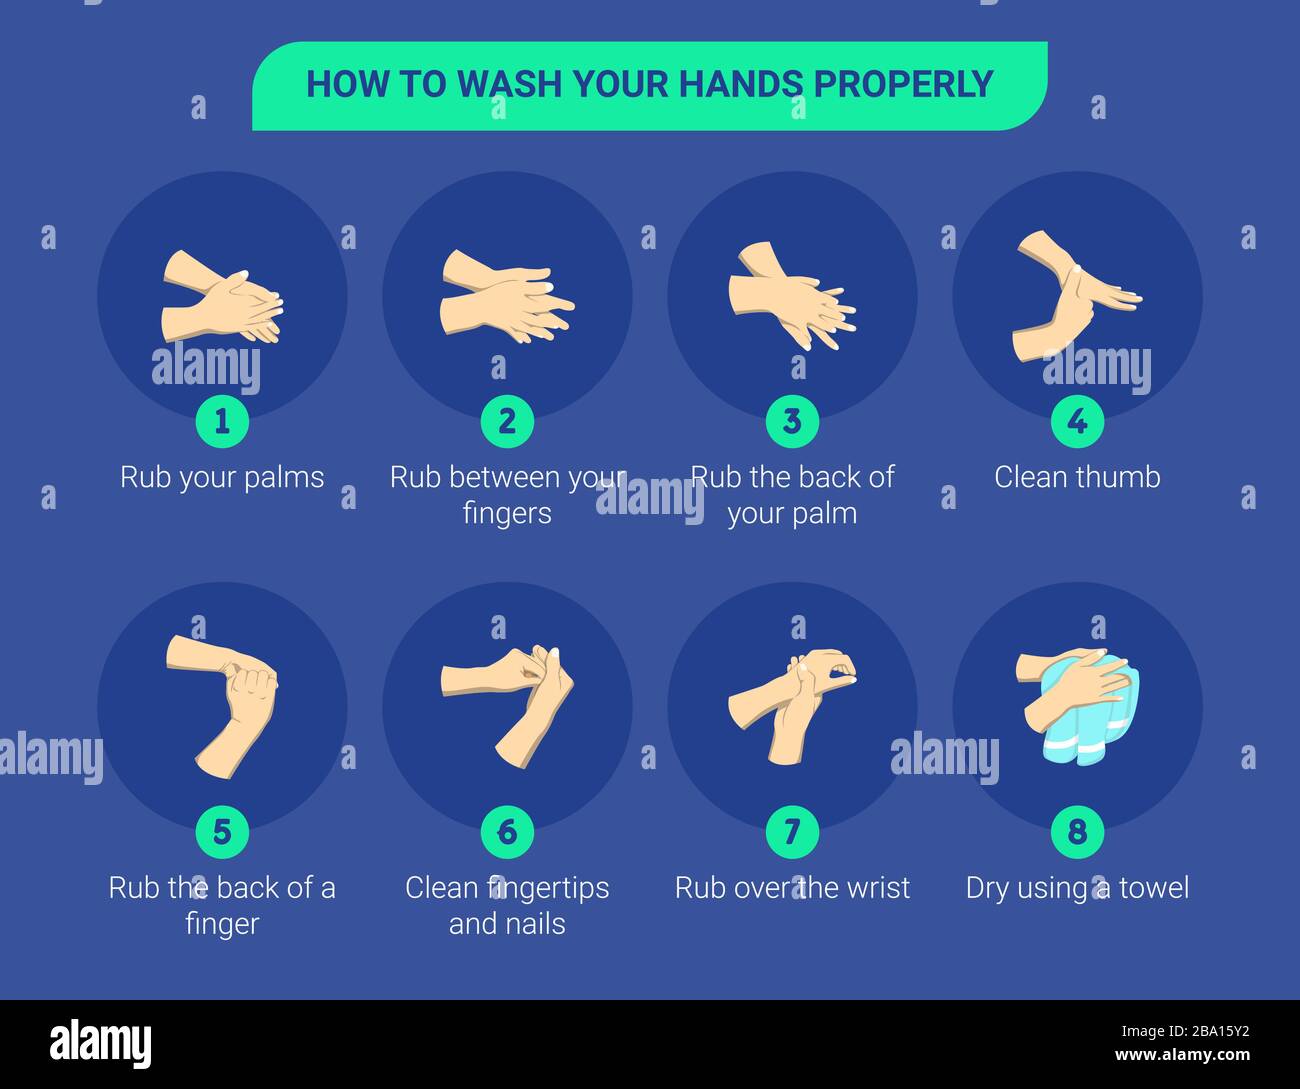 Illustrazione infografica dettagliata di come lavare le mani. Illustrazione infografica di come lavarsi le mani correttamente. Illustrazione Vettoriale